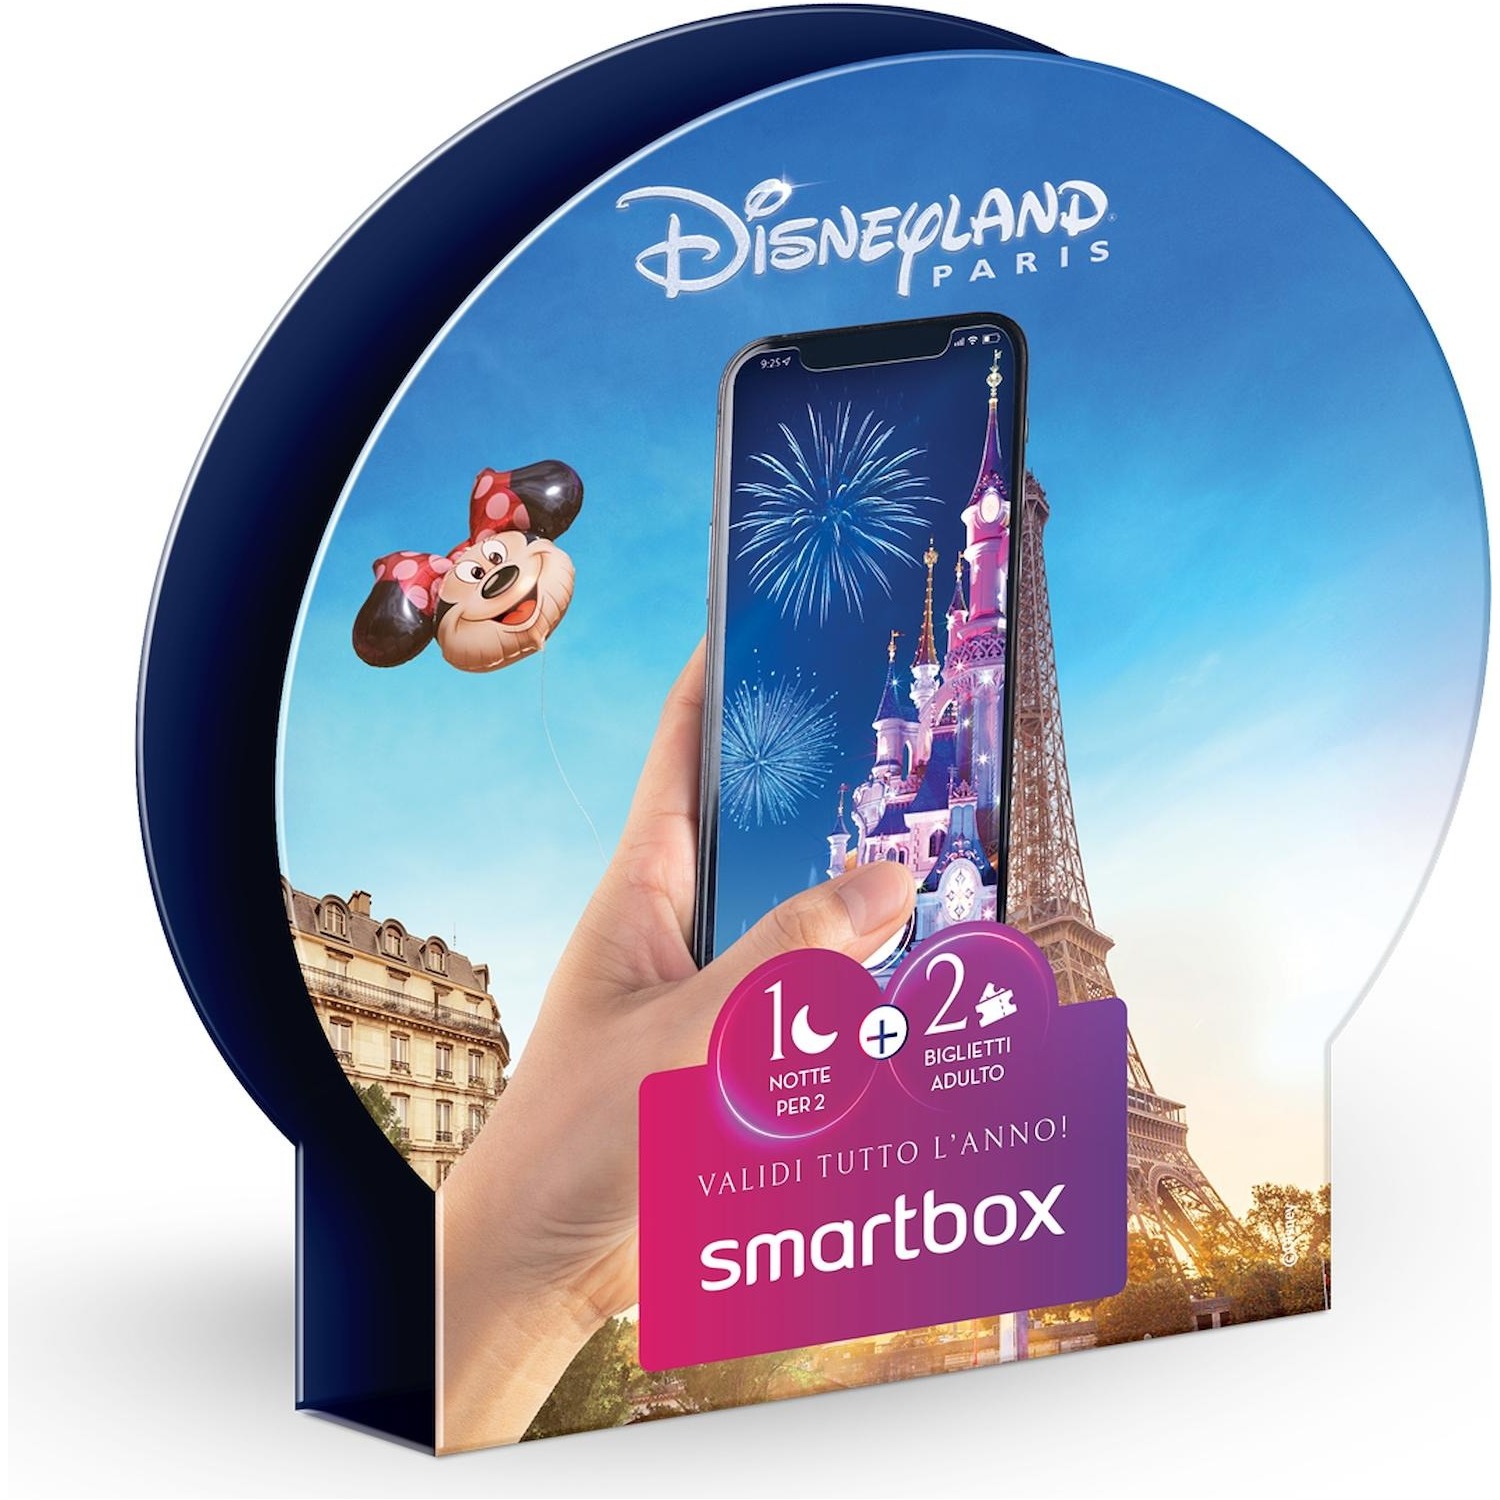 Immagine per Cofanetto regalo Smartbox Disneyland - 1 ingresso e 1 notte per 2 da DIMOStore